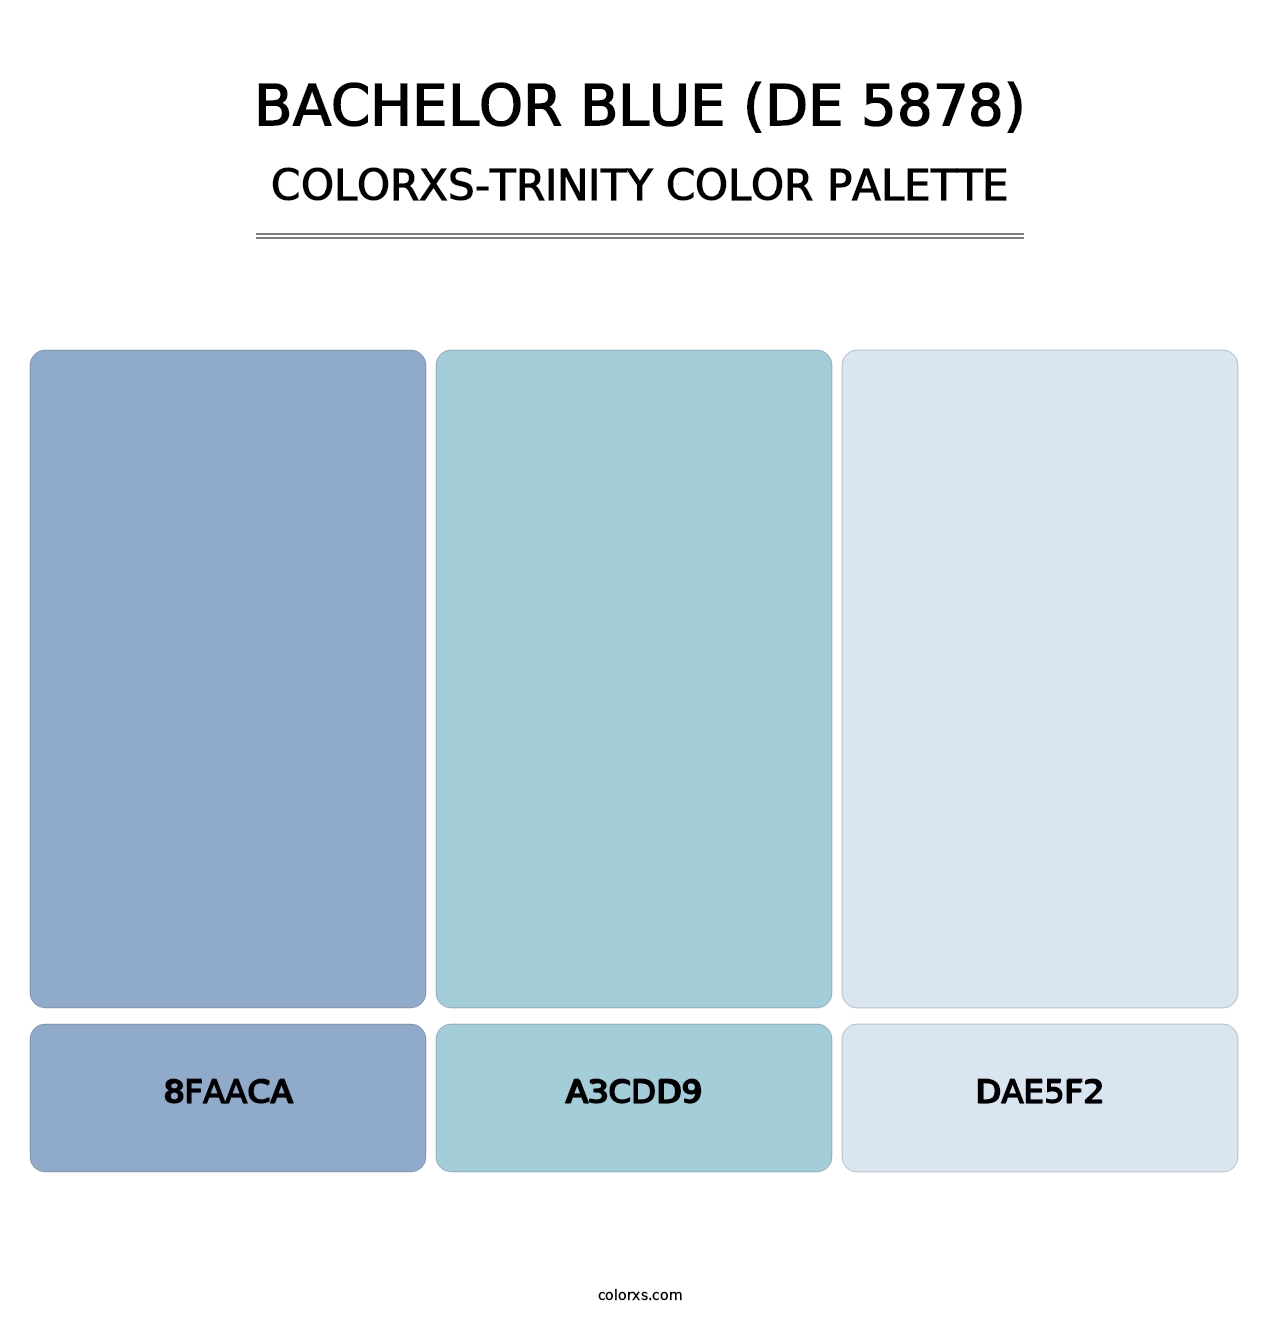 Bachelor Blue (DE 5878) - Colorxs Trinity Palette